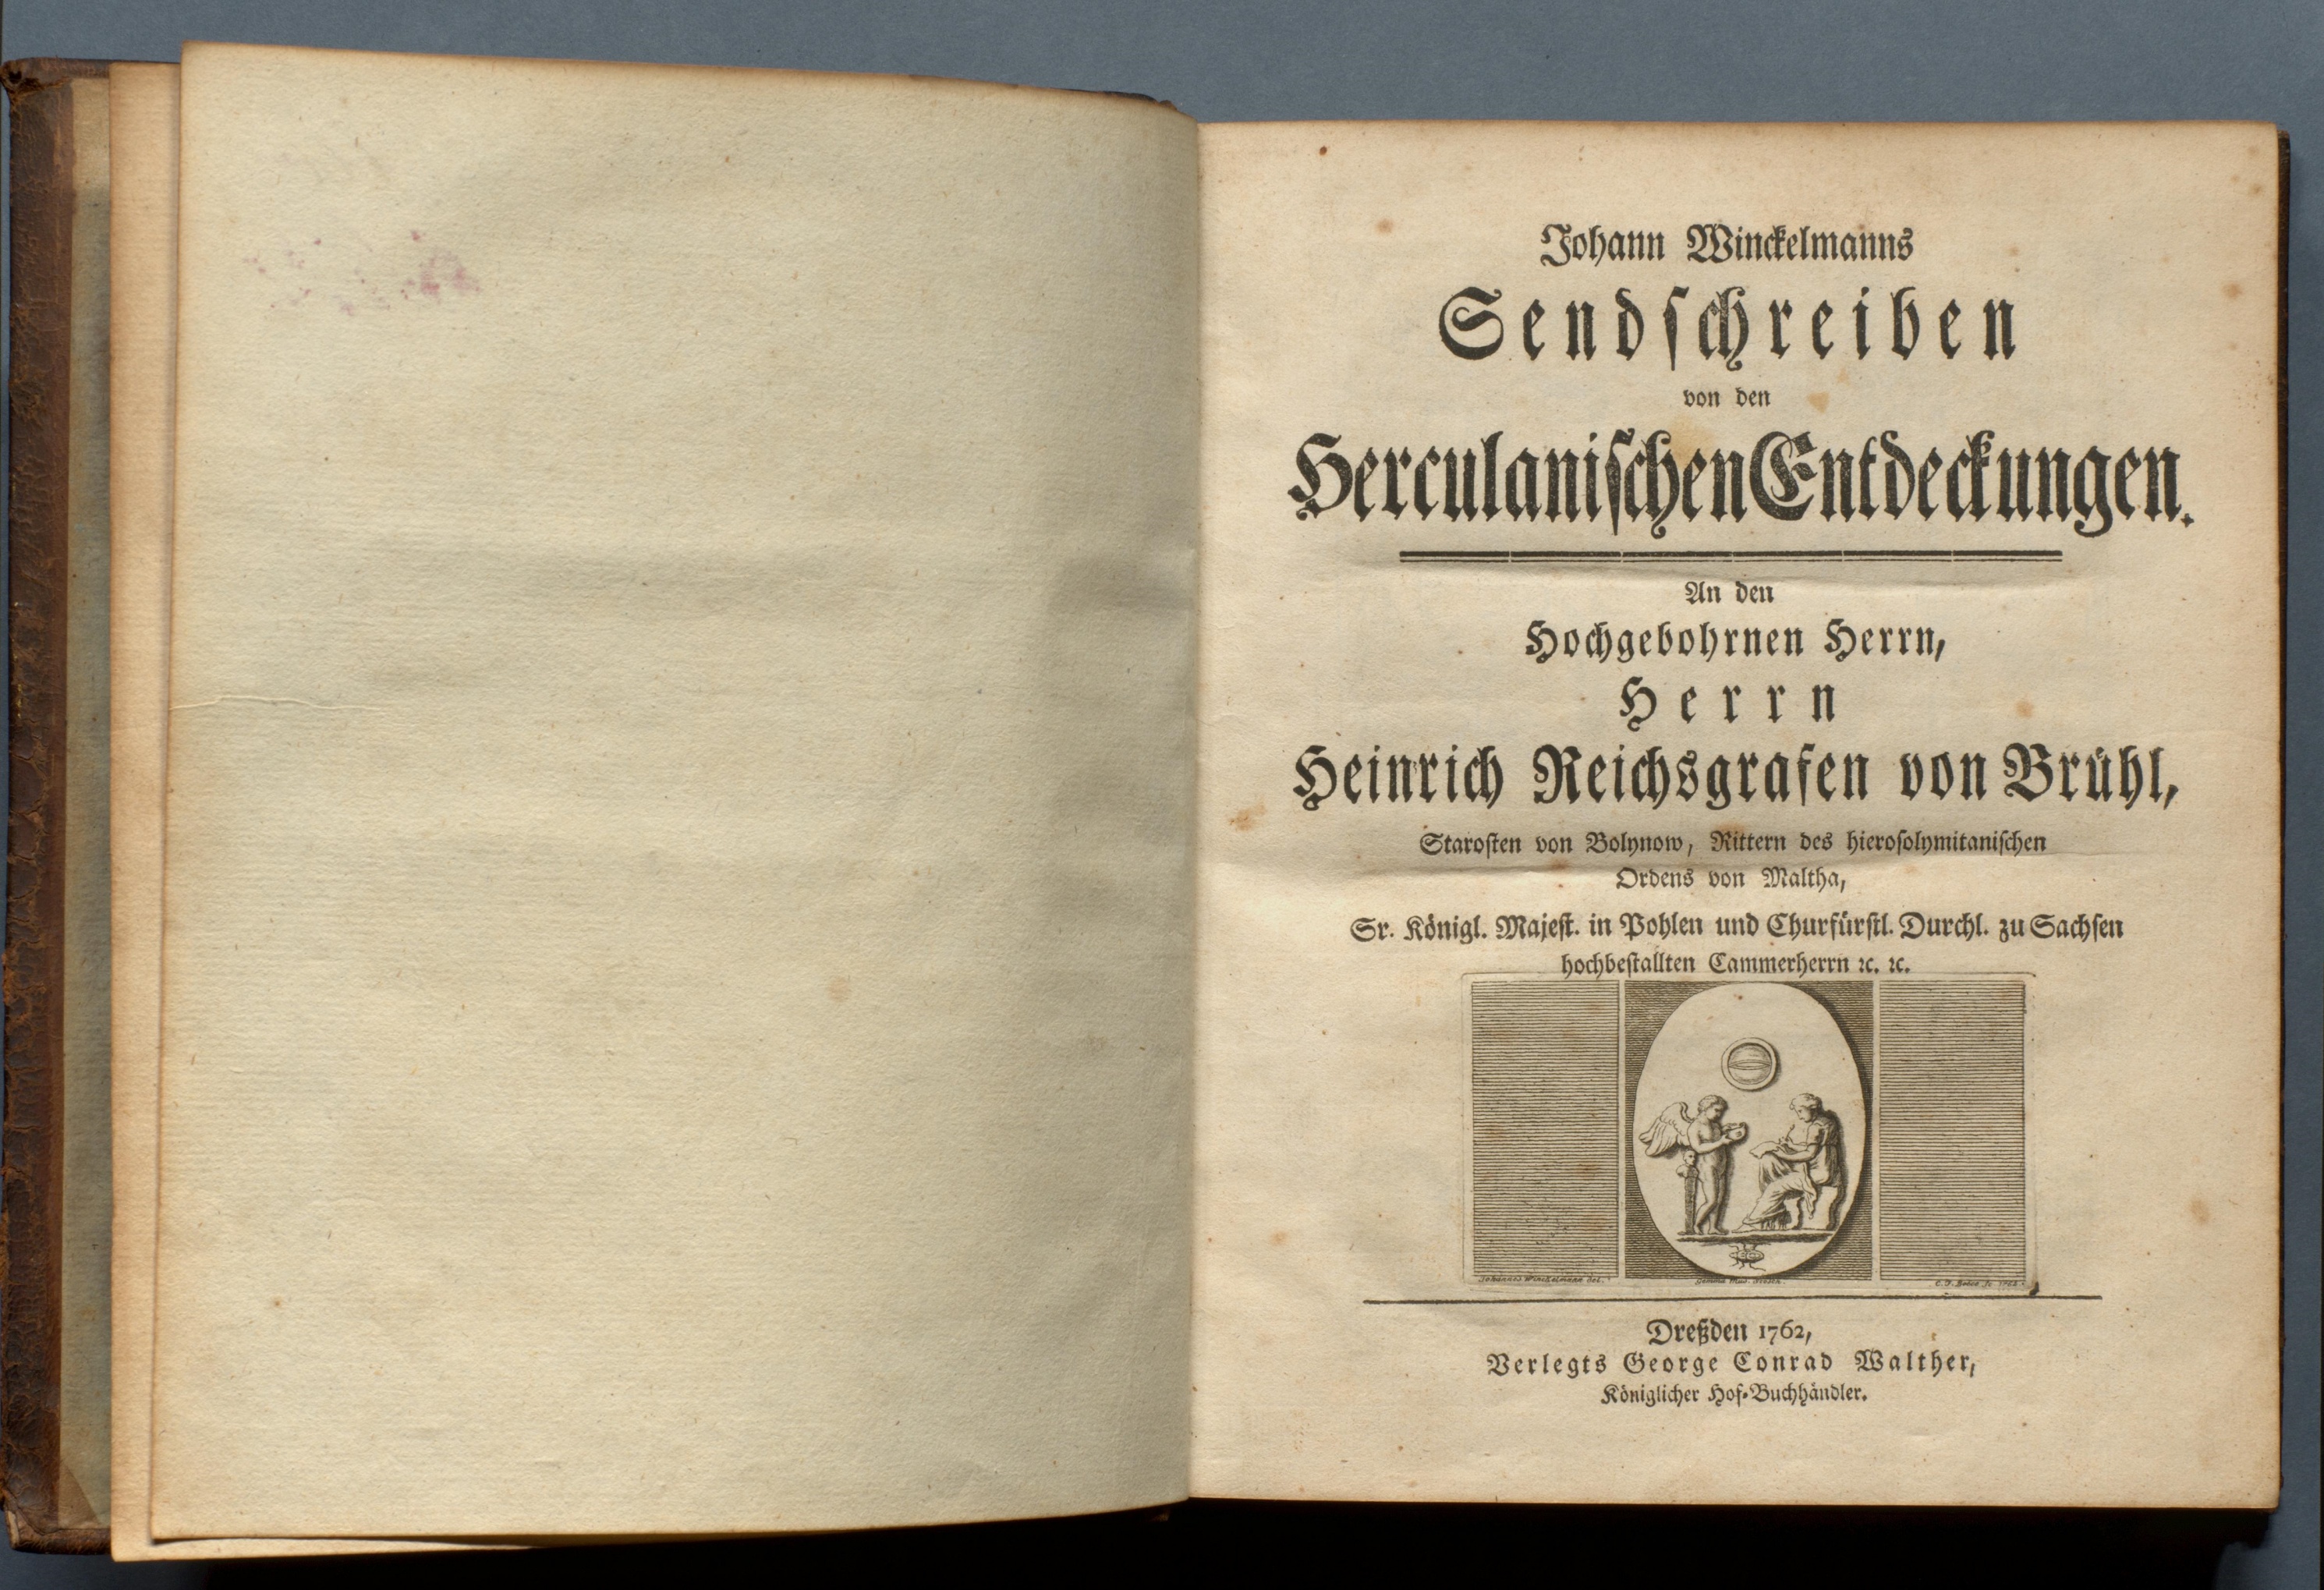 Johann Winckelmanns Sendschreiben von den Herculanischen Entdeckungen und Johann Winckelmanns Nachrichten von den neuesten Herculanischen Entdeckungen (Gleimhaus Halberstadt CC BY-NC-SA)